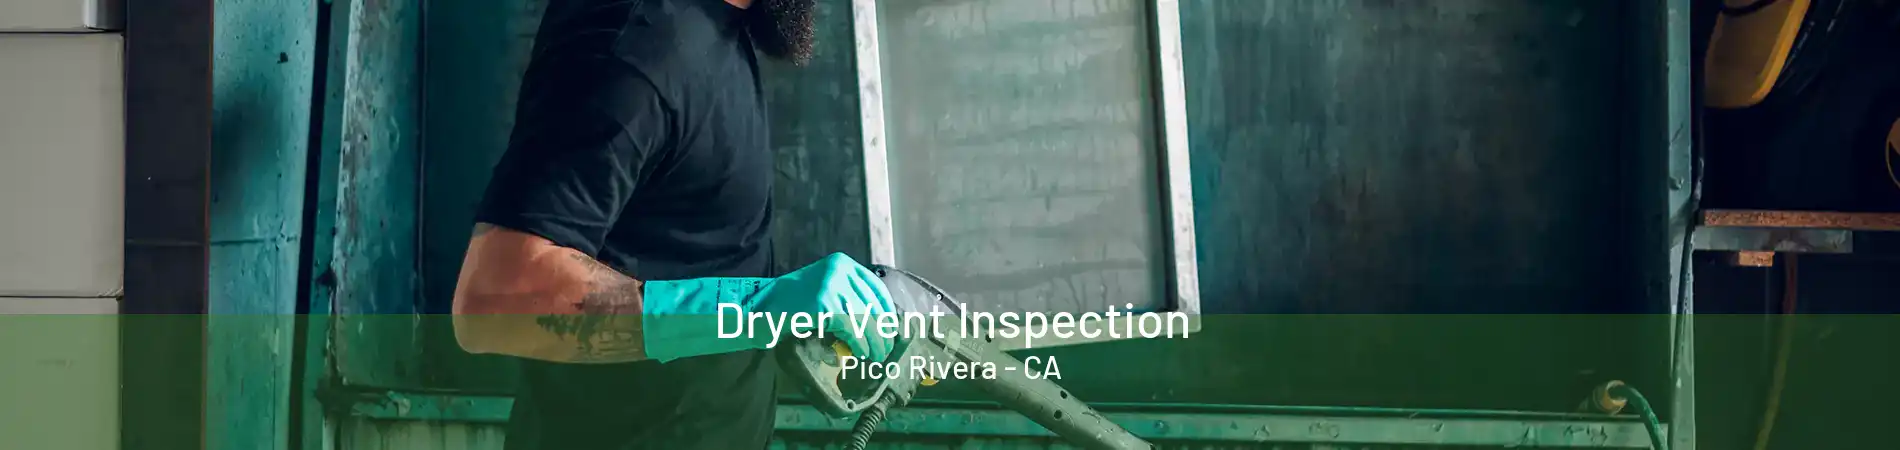 Dryer Vent Inspection Pico Rivera - CA